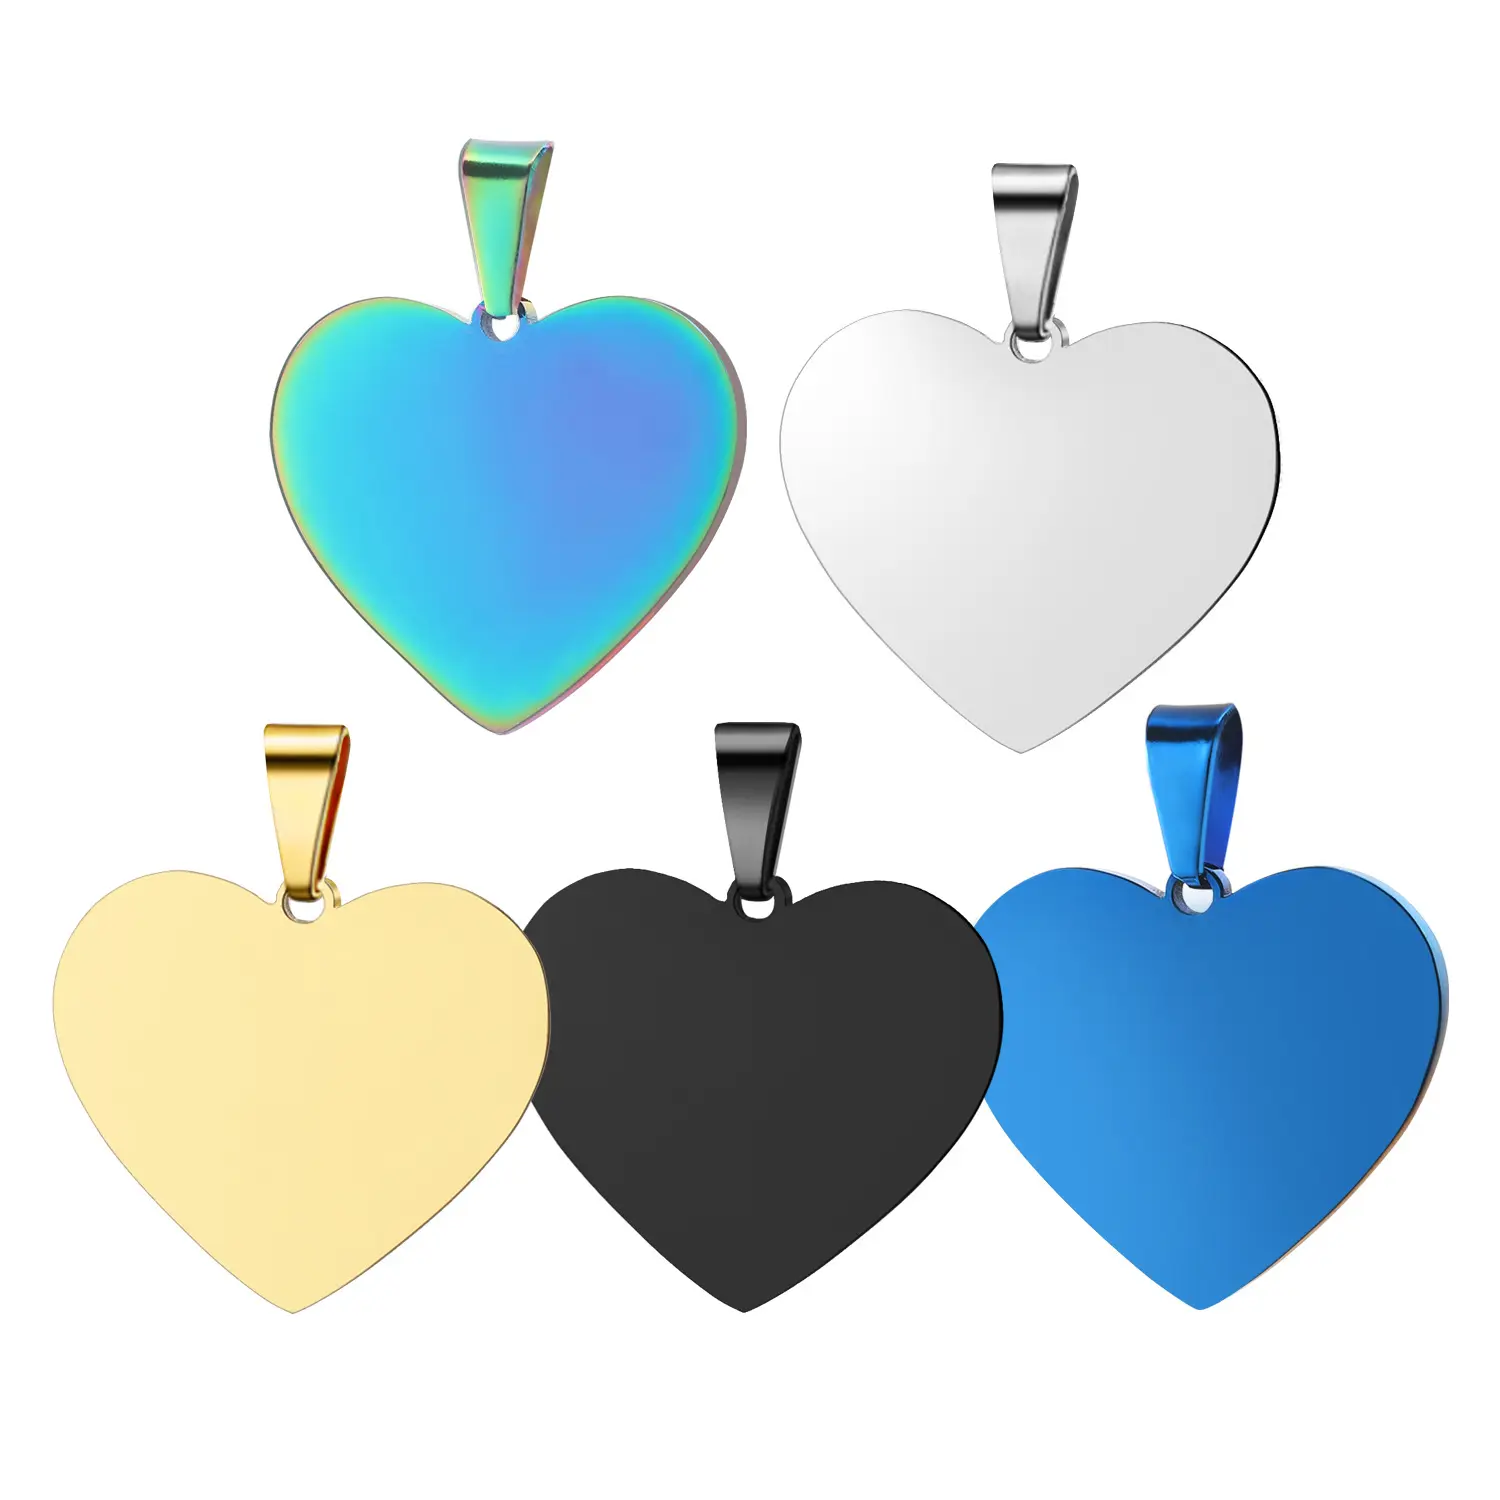 مخصص تصميم المعادن فارغة عُقد على شكل قلب منقوش شعار دلايات من الفولاذ المقاوم للصدأ فارغة القلب علامة